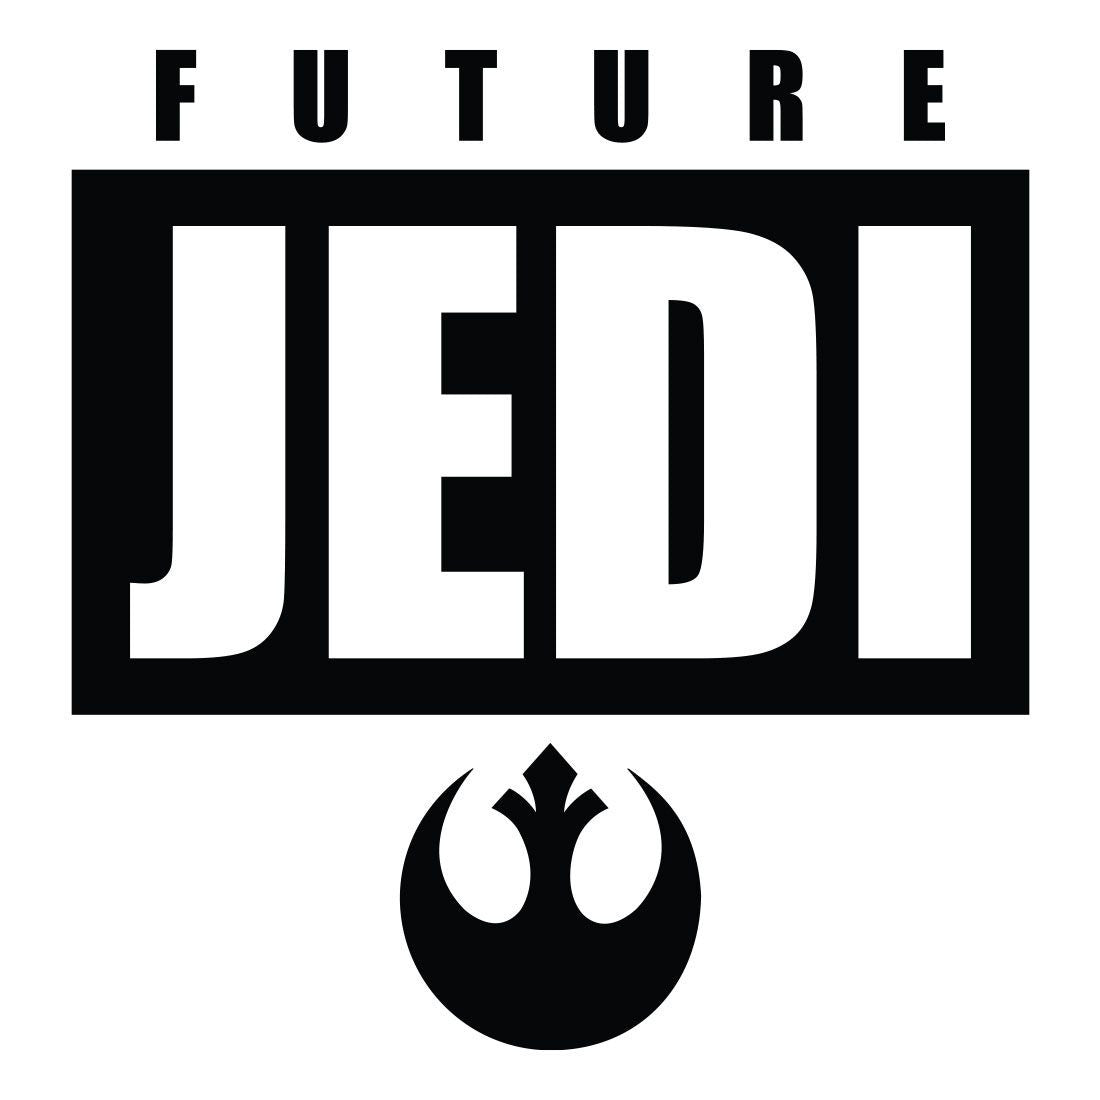 Star Wars Kid's T-shirt - Future Jedi